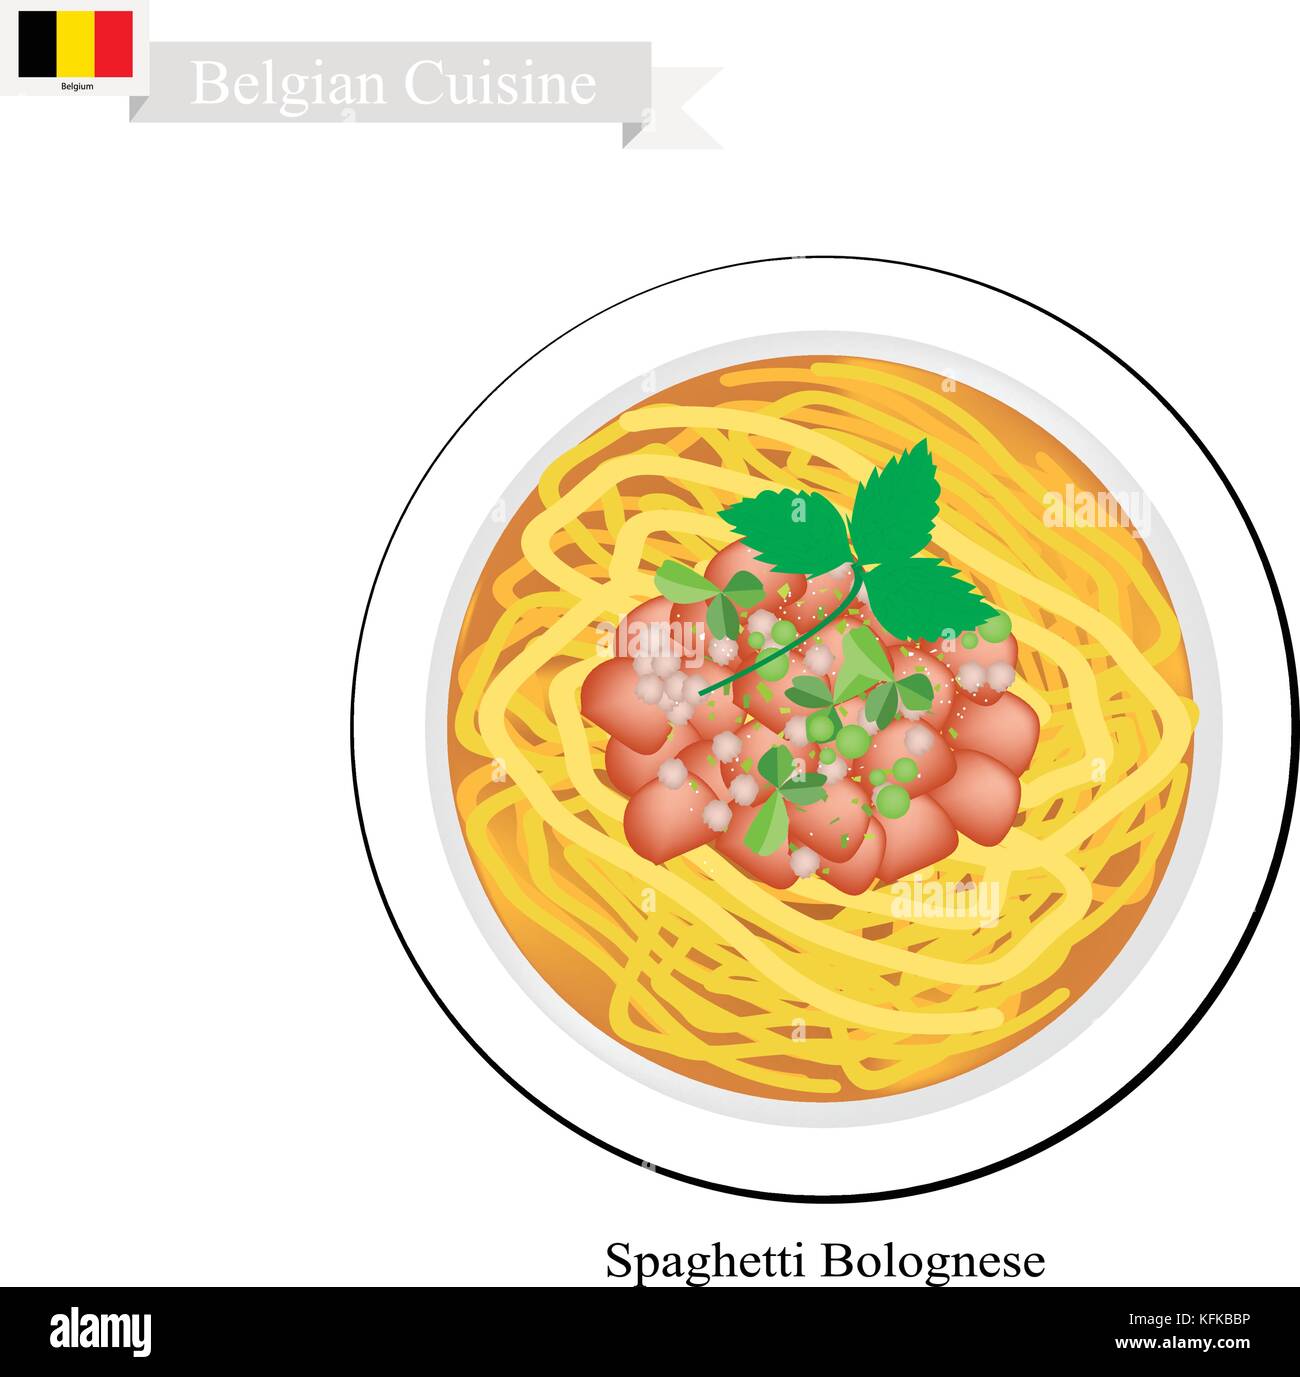 Cucina belga, illustrazione di spaghetti alla bolognese o il tradizionale bolognese con le carni bovine macinate, salsa di pomodoro, formaggio parmigiano e basilico. Uno dei mo Illustrazione Vettoriale